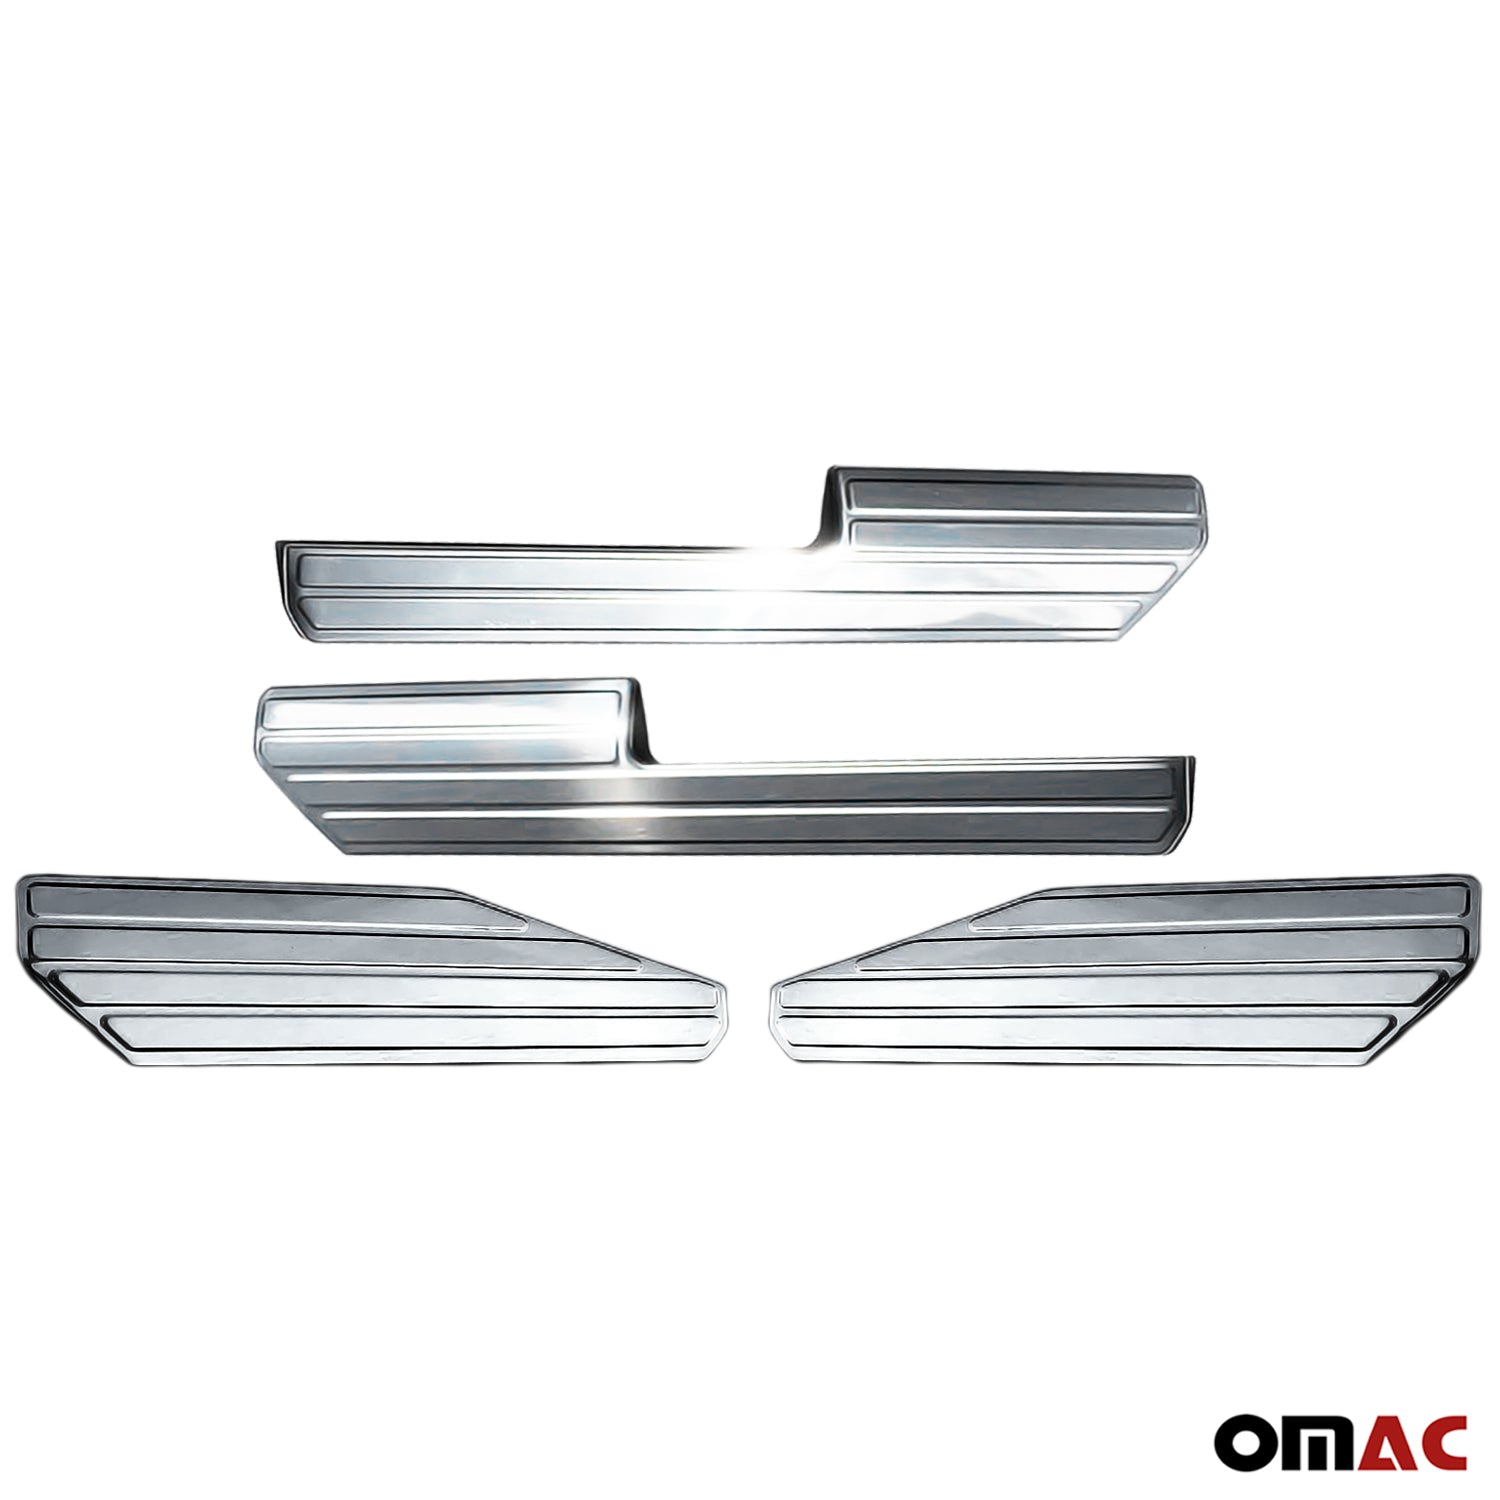 Seuil de porte intérieur pour VW Amarok 2010-2020 acier inox chromé 4 Pcs